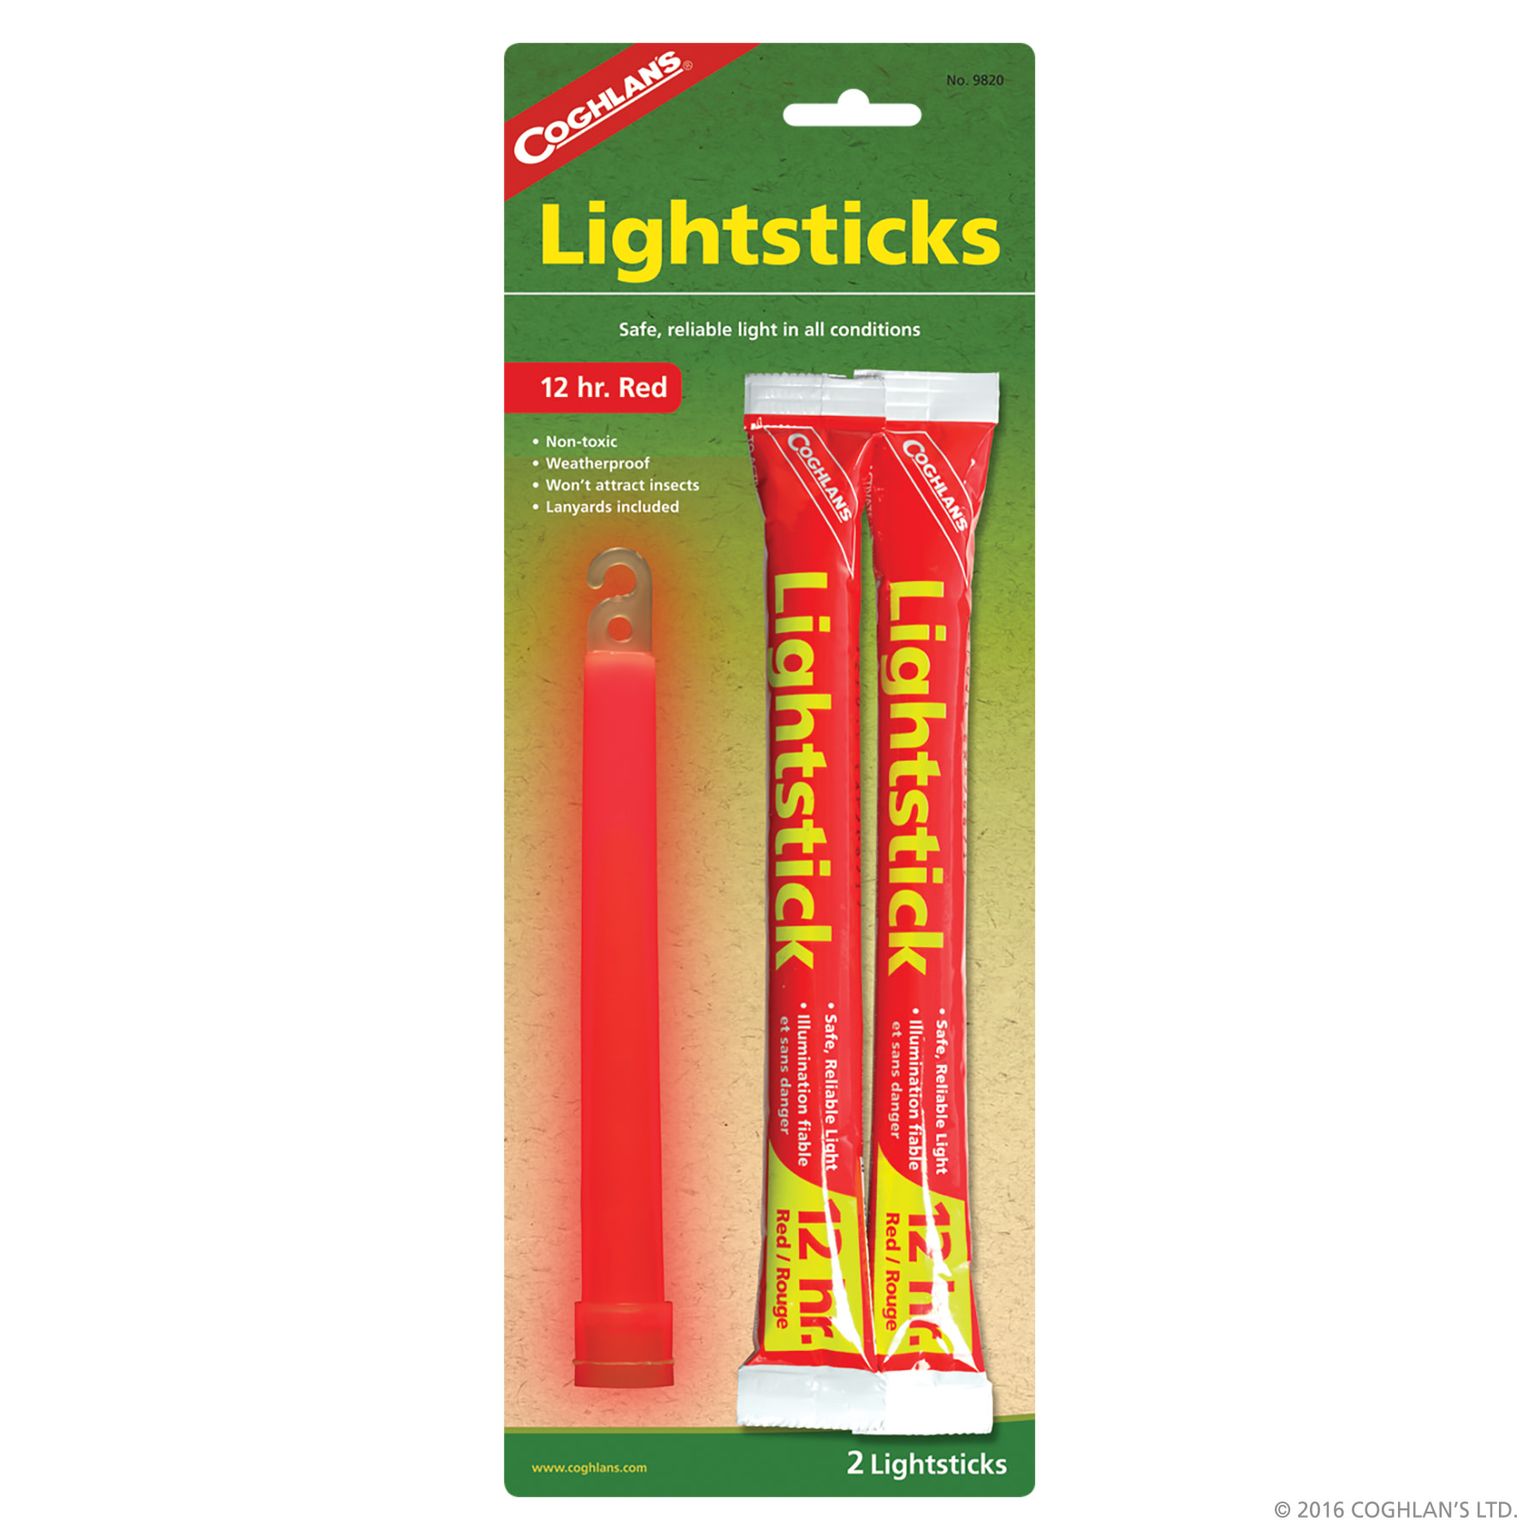 Lightsticks 2-pack